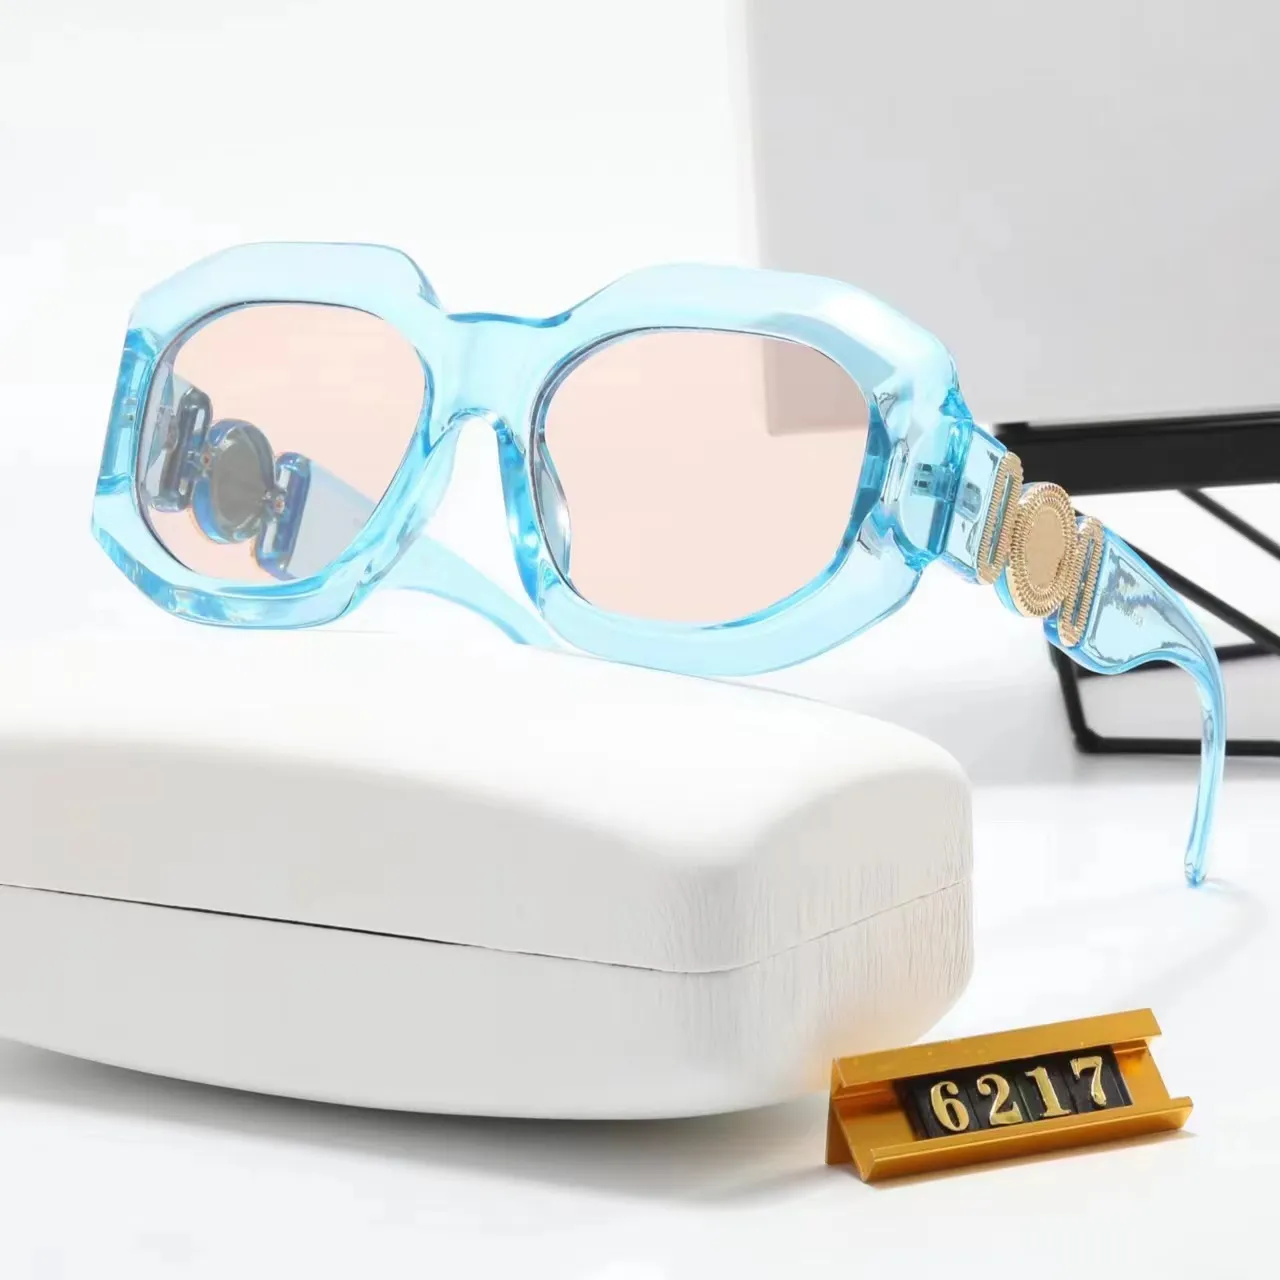 Versage Sunglass tasarımcı güneş gözlüğü erkek moda güneş gözlüğü Küçük Çerçeve Klasik Vintage Ayna Temizle Gözlükler beyaz kasa lunette lüks tasarımcı gözlükleri